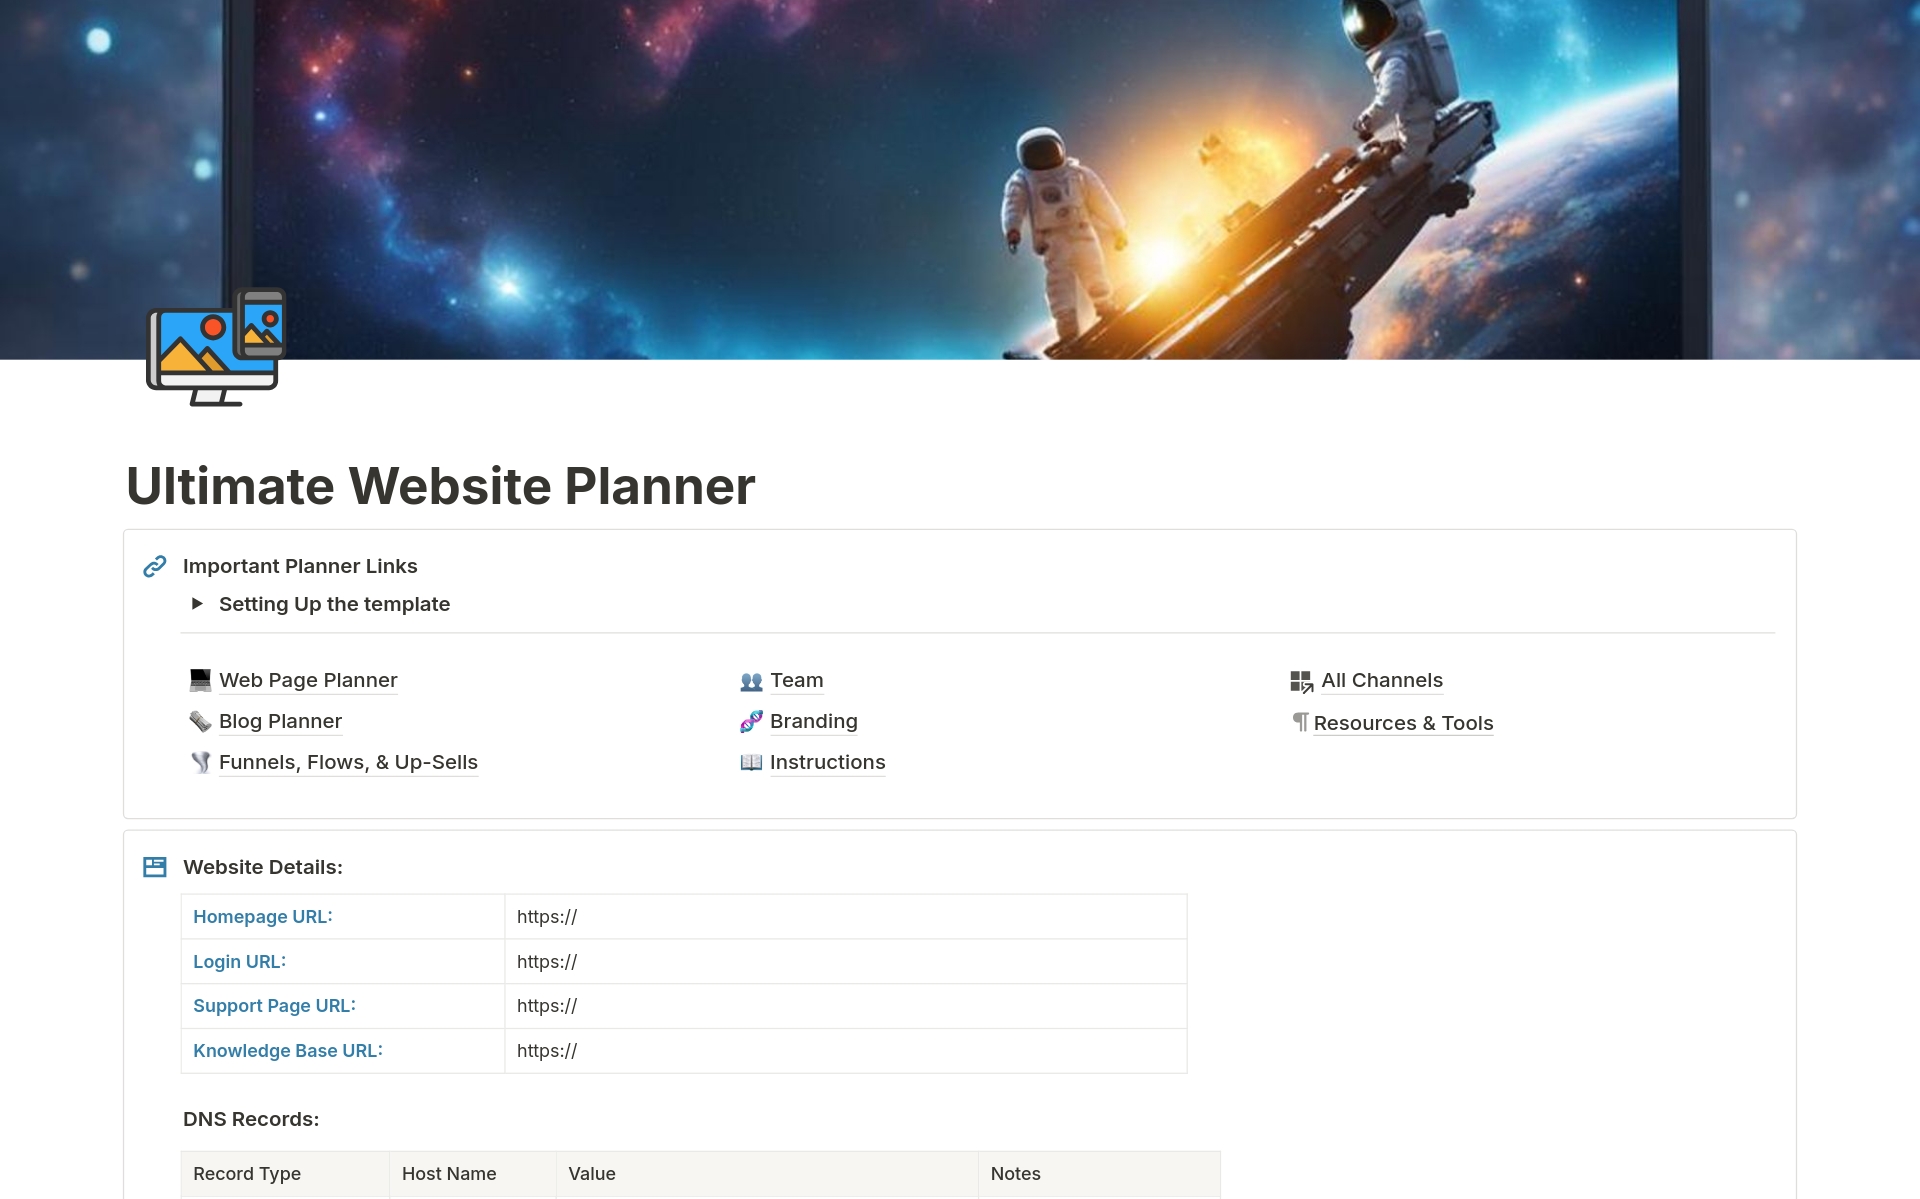 Uma prévia do modelo para Complete Website Planner & Workbook